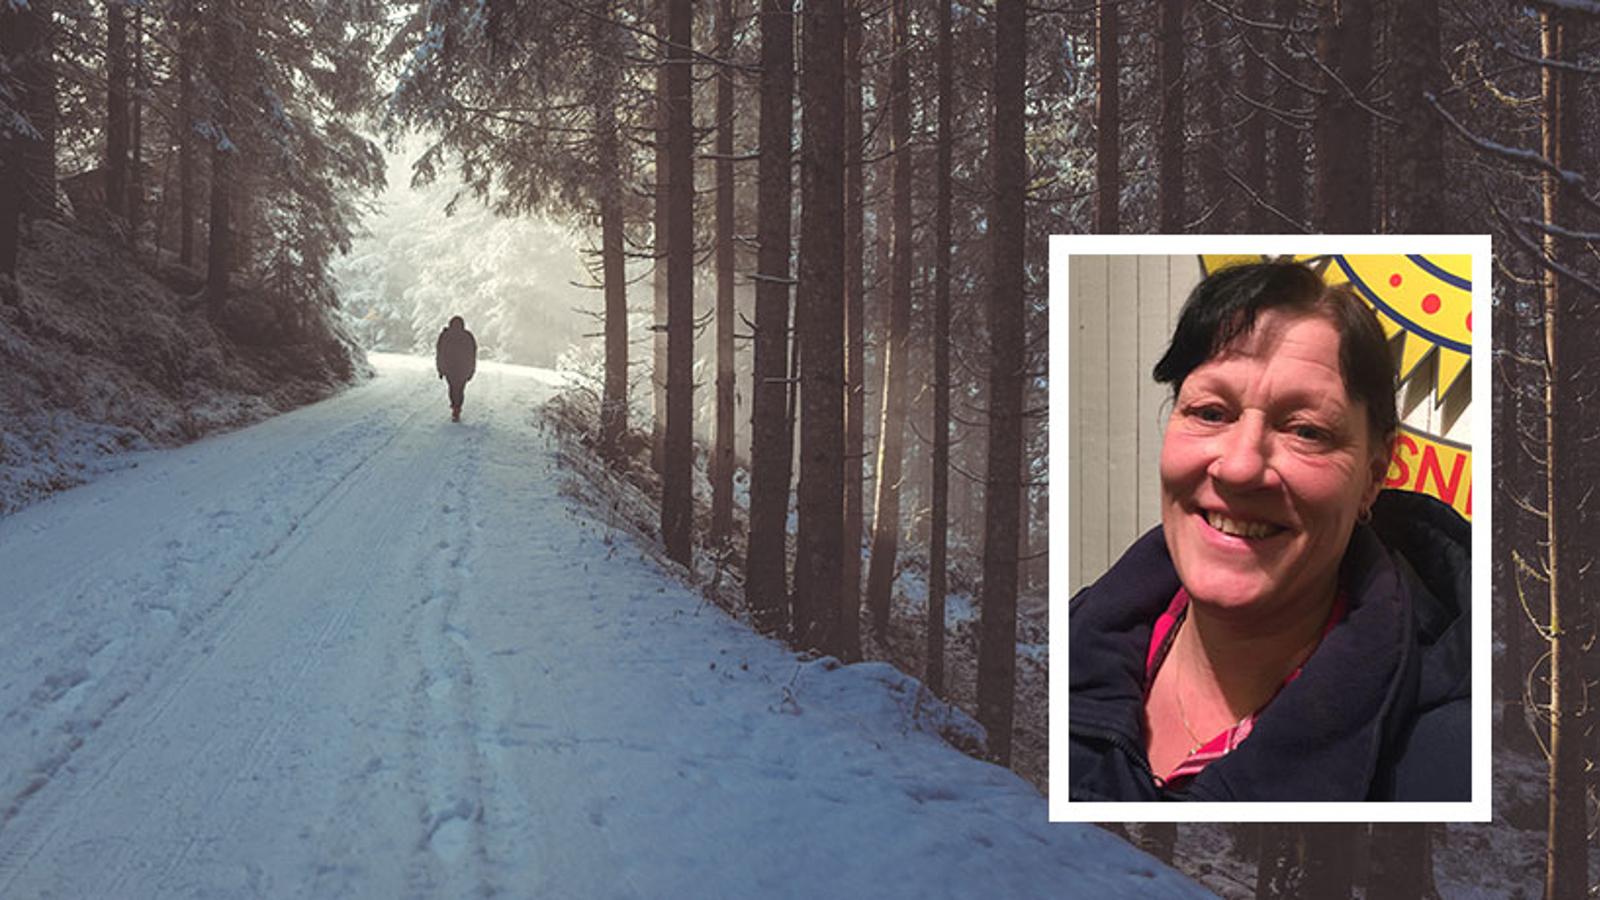 Till vänster: Ryggtavlan på en person som är ute och går på en snötäckt stig i skogen. Till höger: Ann Sahlström.